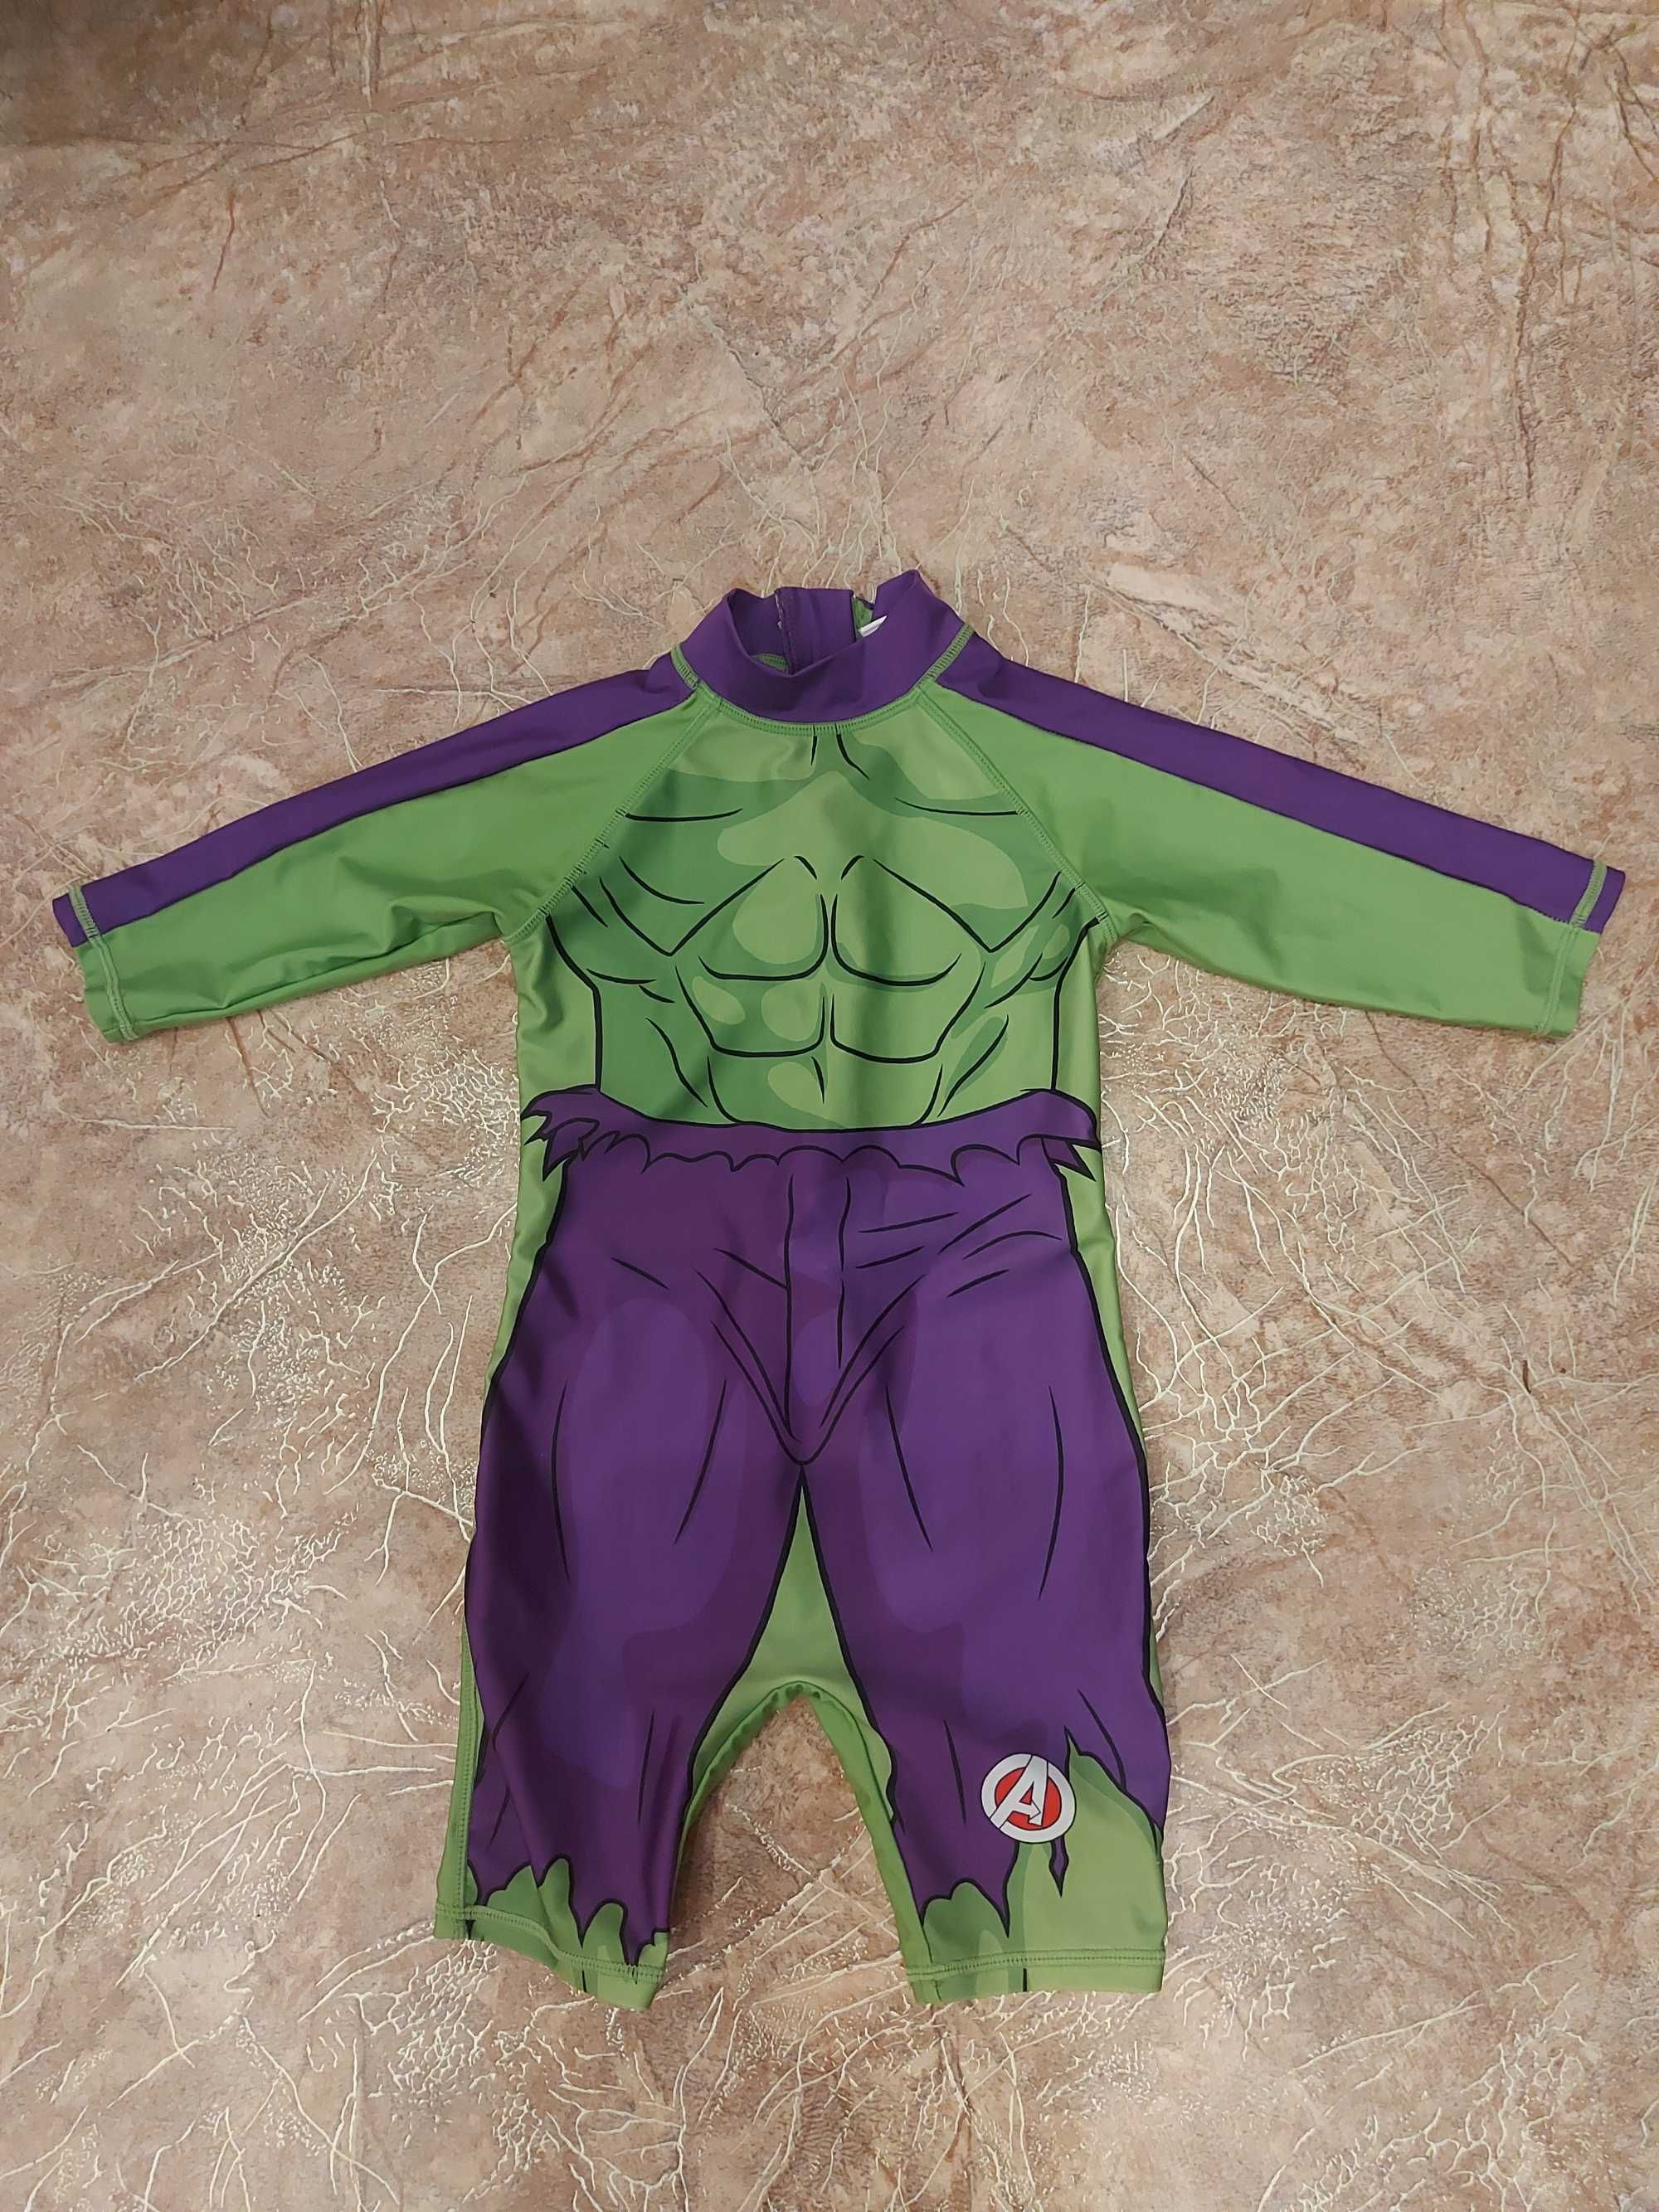 Костюм Халка Marvel Avengers Hulk костюм для плавання/ карнавальний